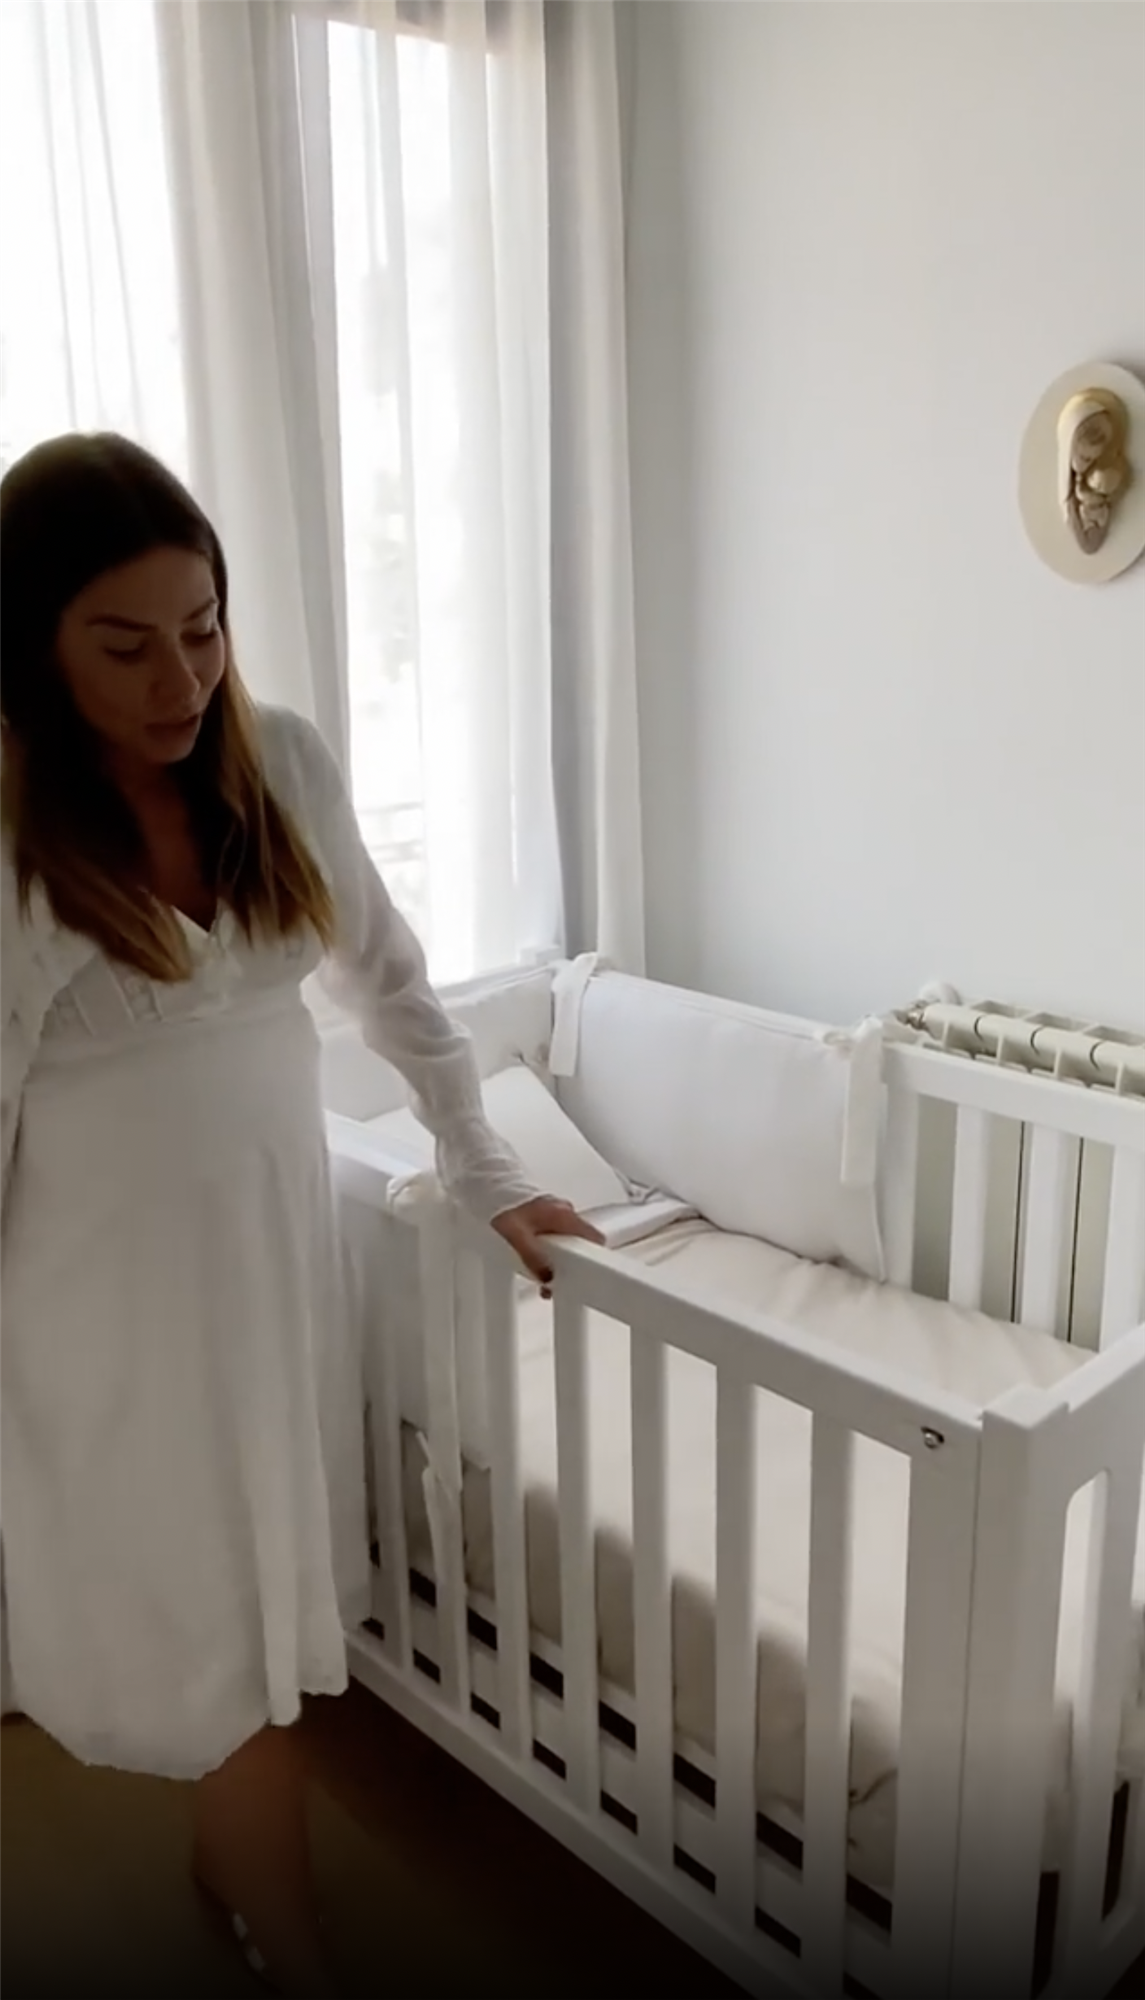 Habitación del bebé de Marta Carriedo en Instagram